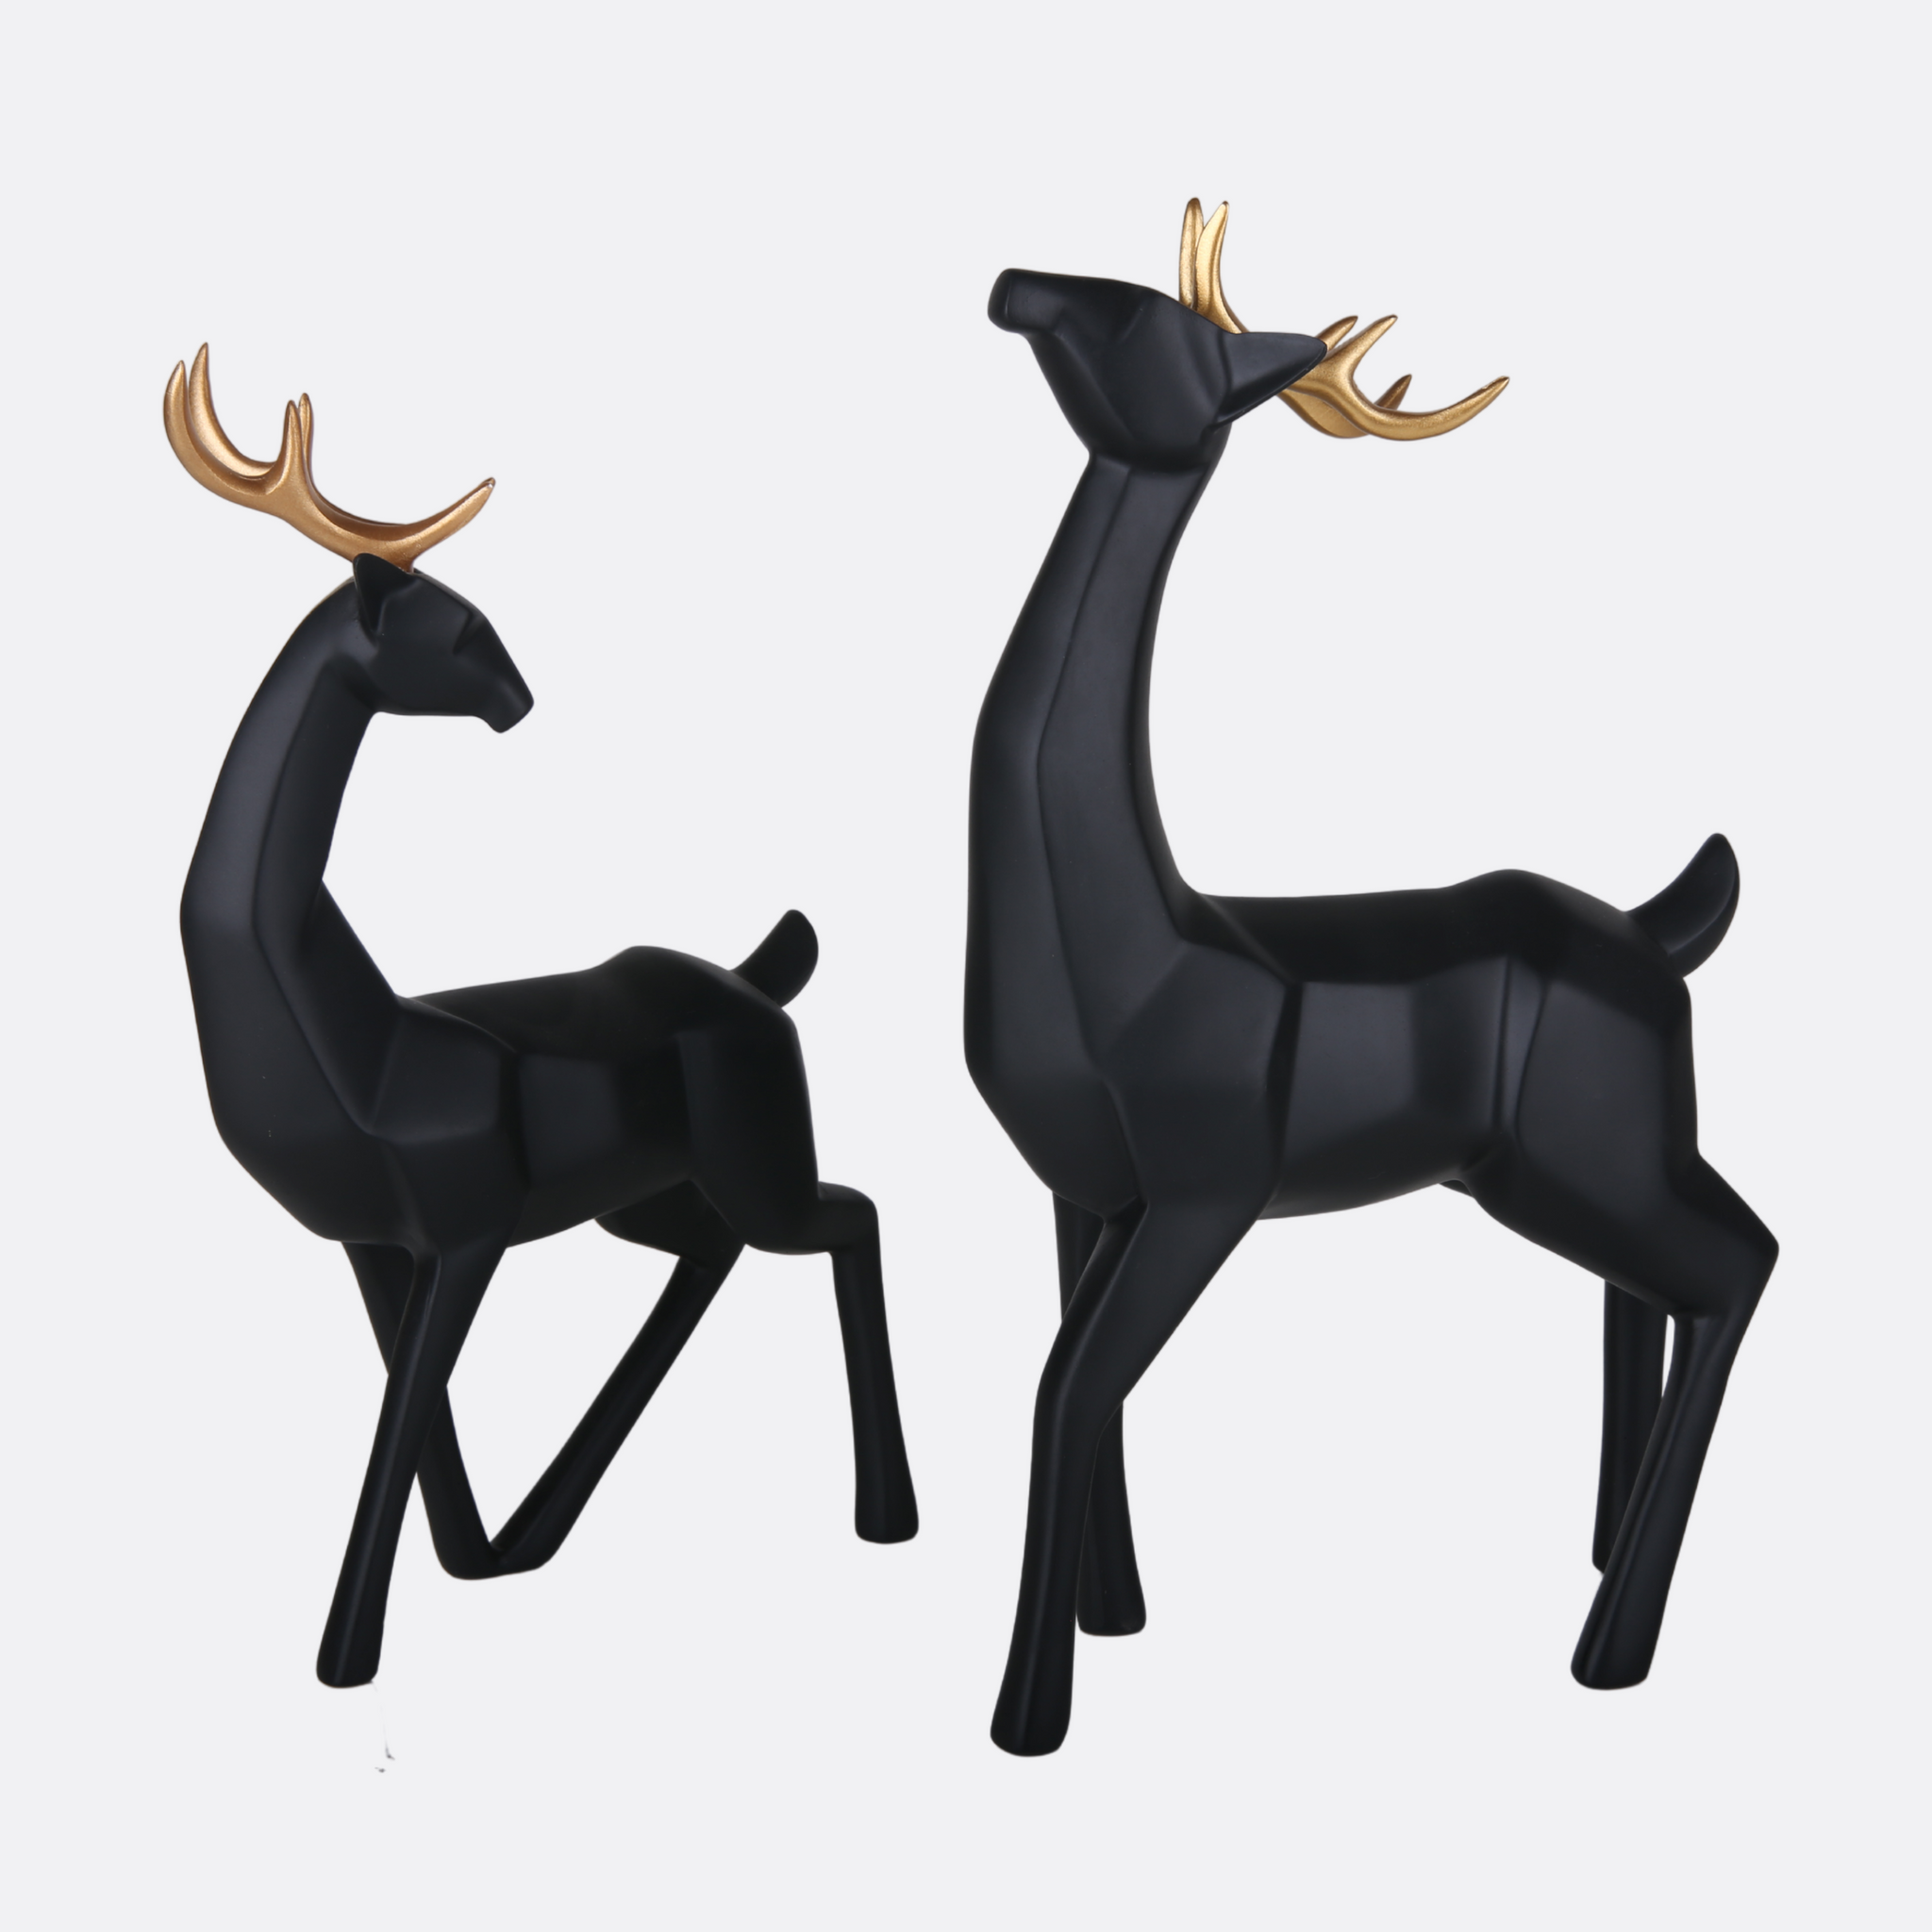 Spiffy Black Deer Sculpture (pair)